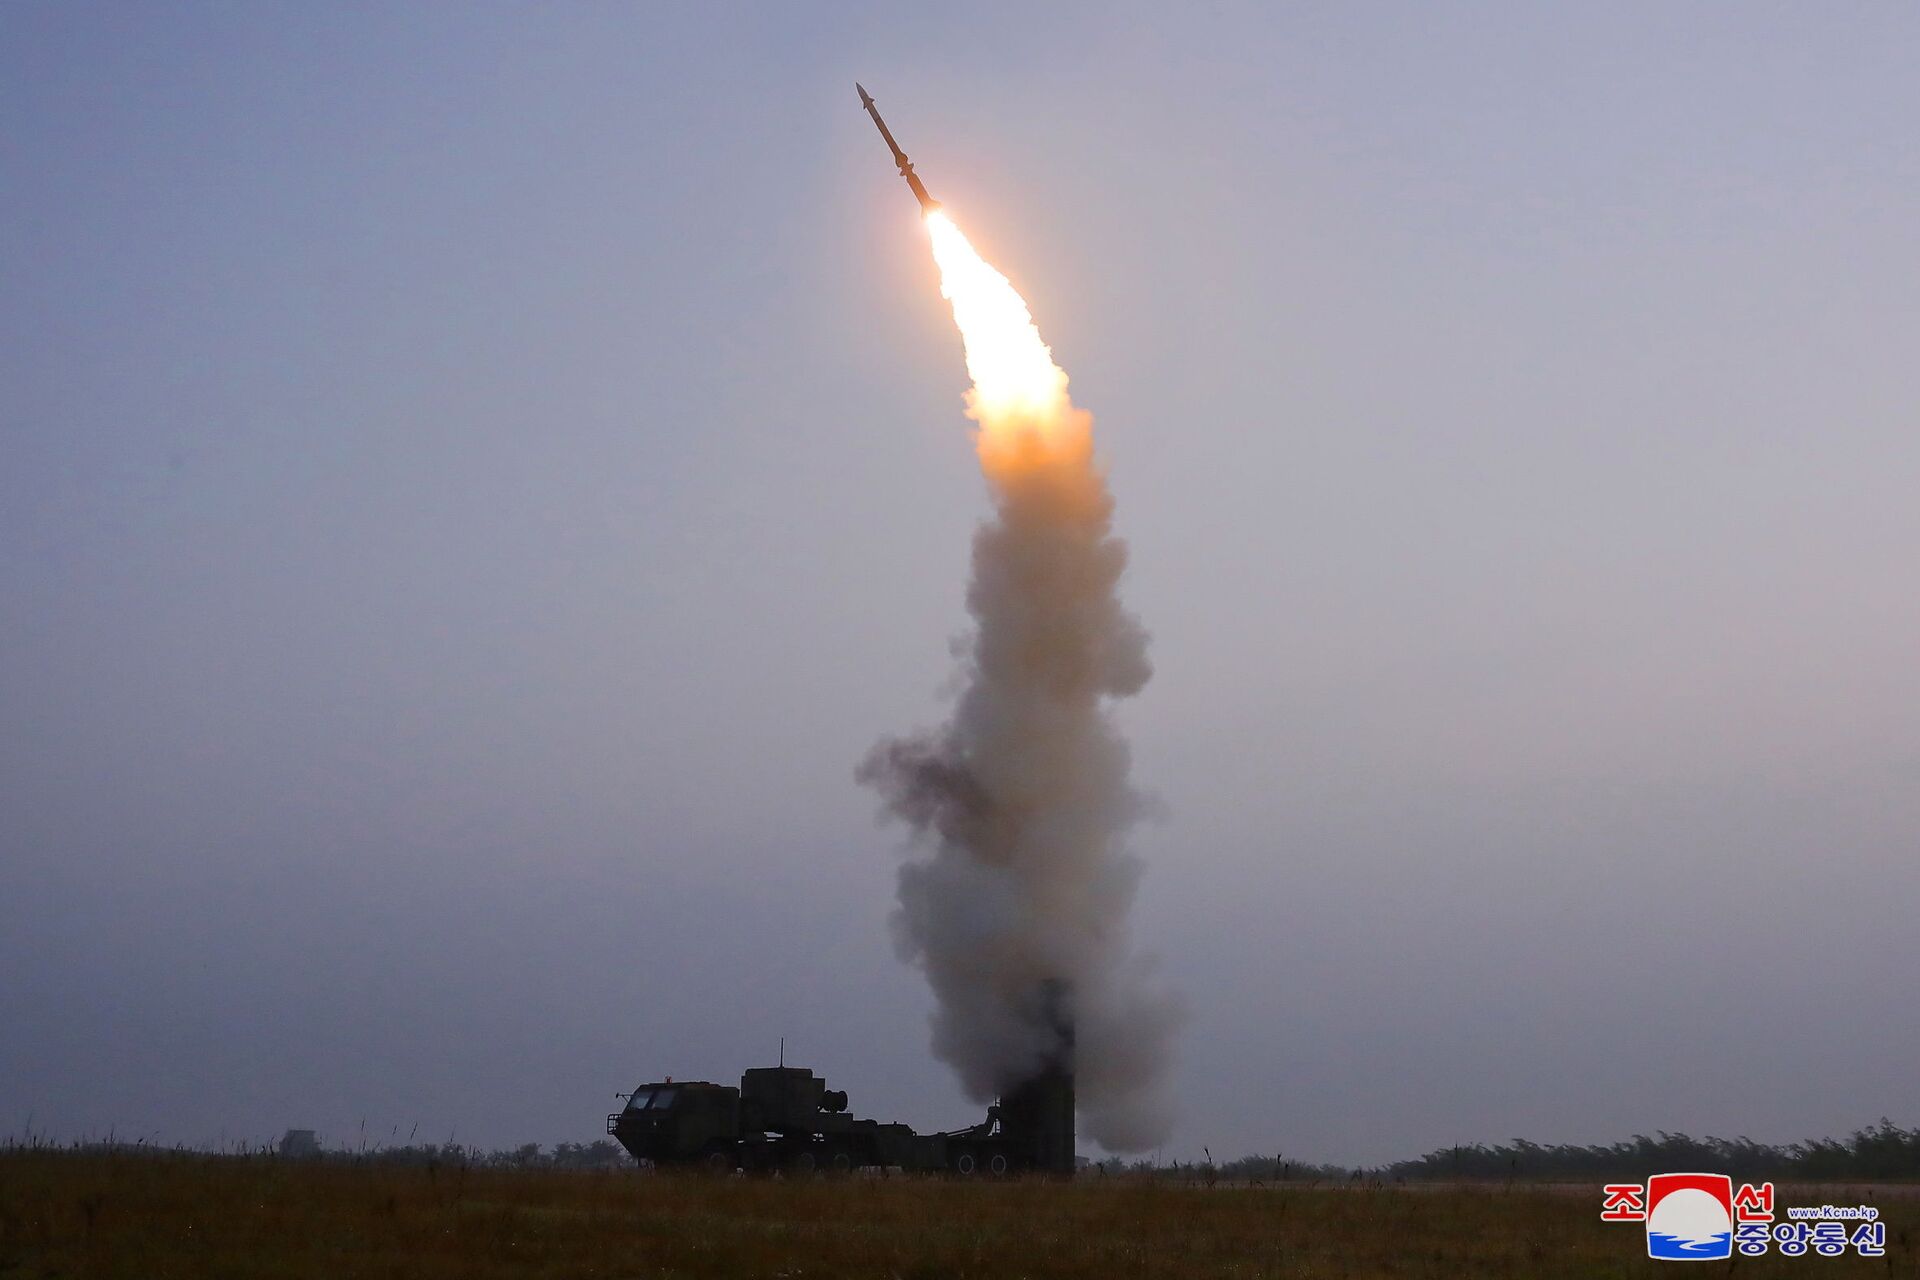  Teste de lançamento de recém-desenvolvido míssil antiaéreo realizado pela Coreia do Norte, foto divulgada em 1º de outubro de 2021 - Sputnik Brasil, 1920, 09.11.2021